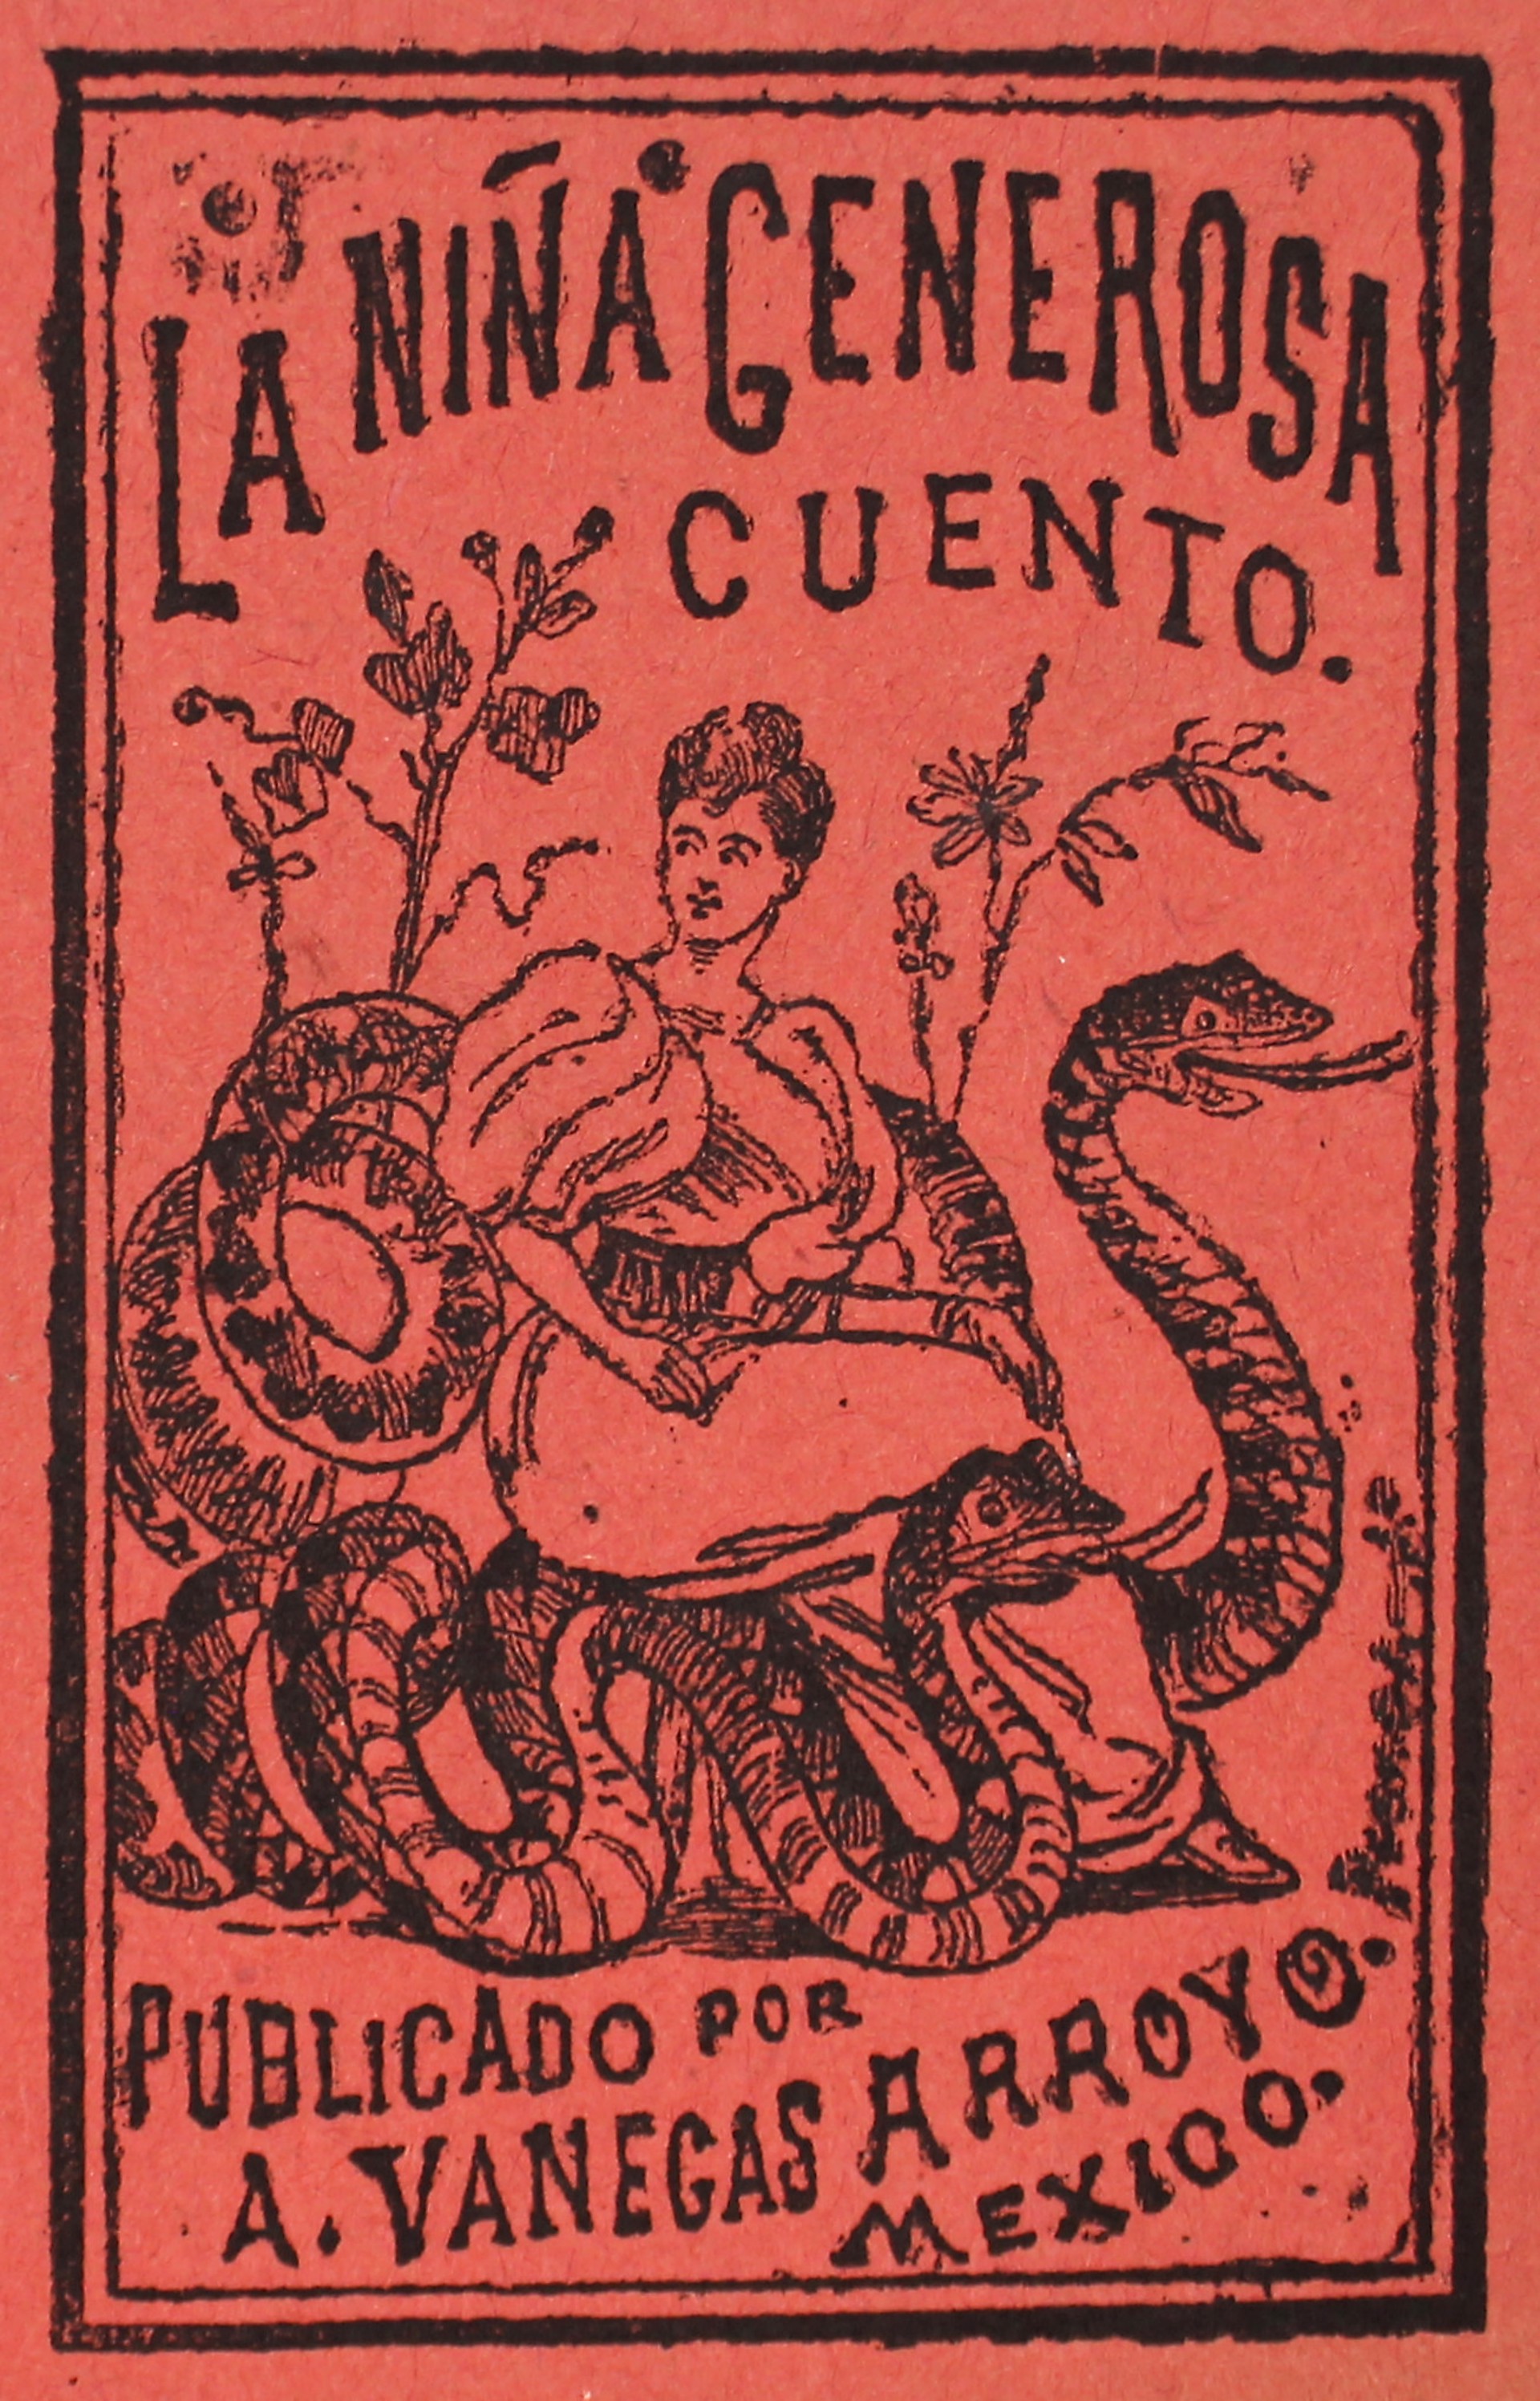 La Nina Generosa by José Guadalupe Posada (1852 - 1913)